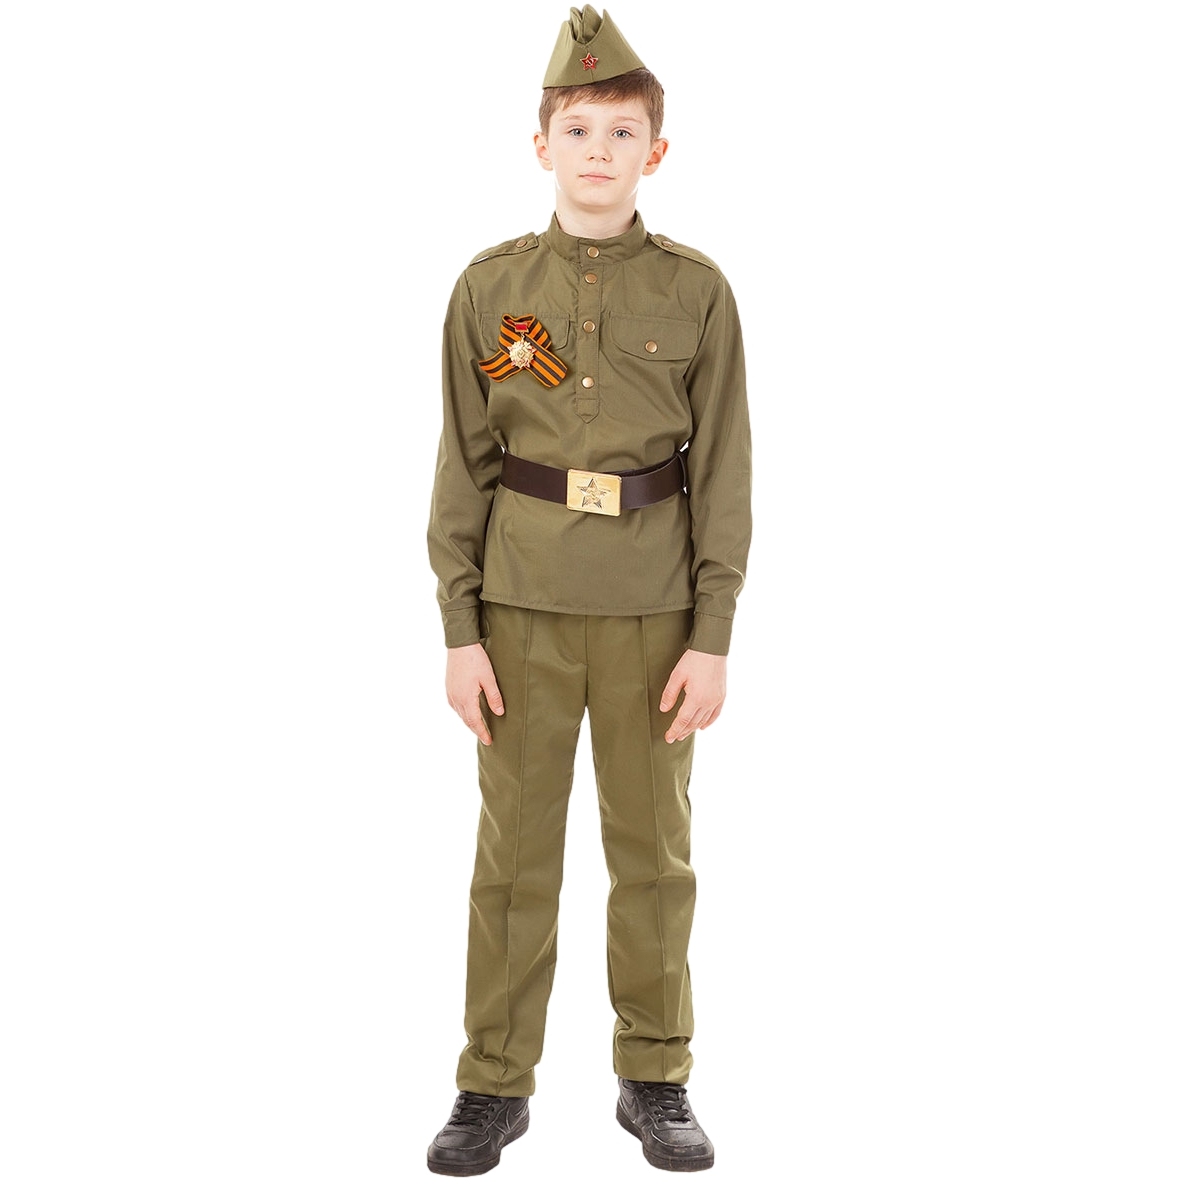 Карнавальный костюм "солдат"(гимнастерка, брюки, пилотка, ремень, георгиевская лента) размер 122-32